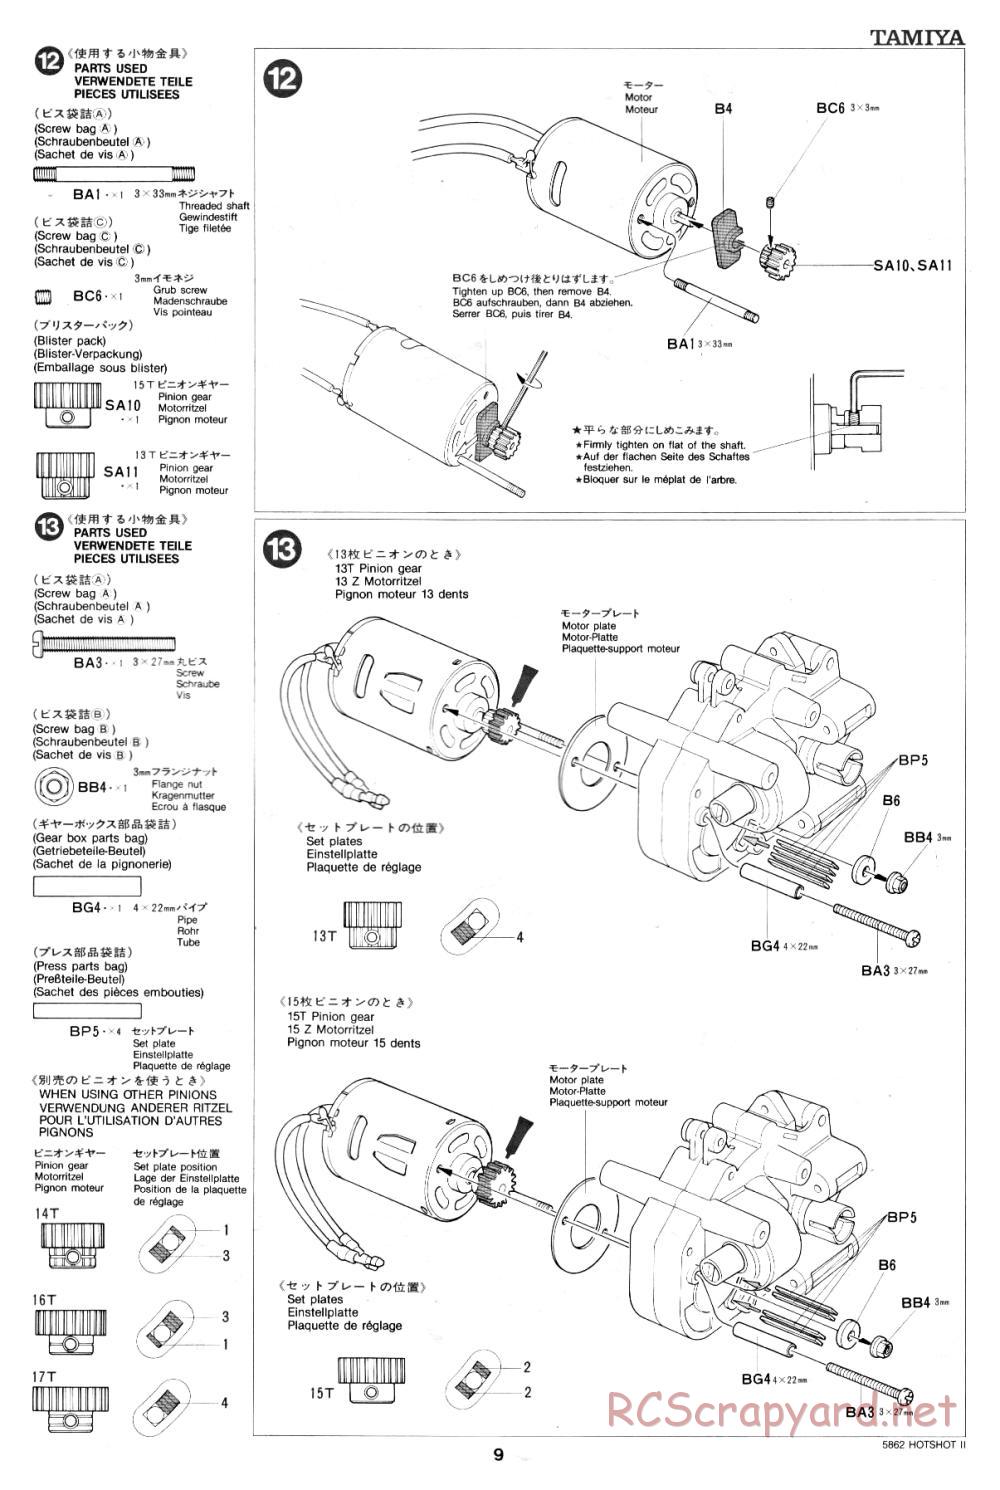 Tamiya - Hot-Shot II - 58062 - Manual - Page 9